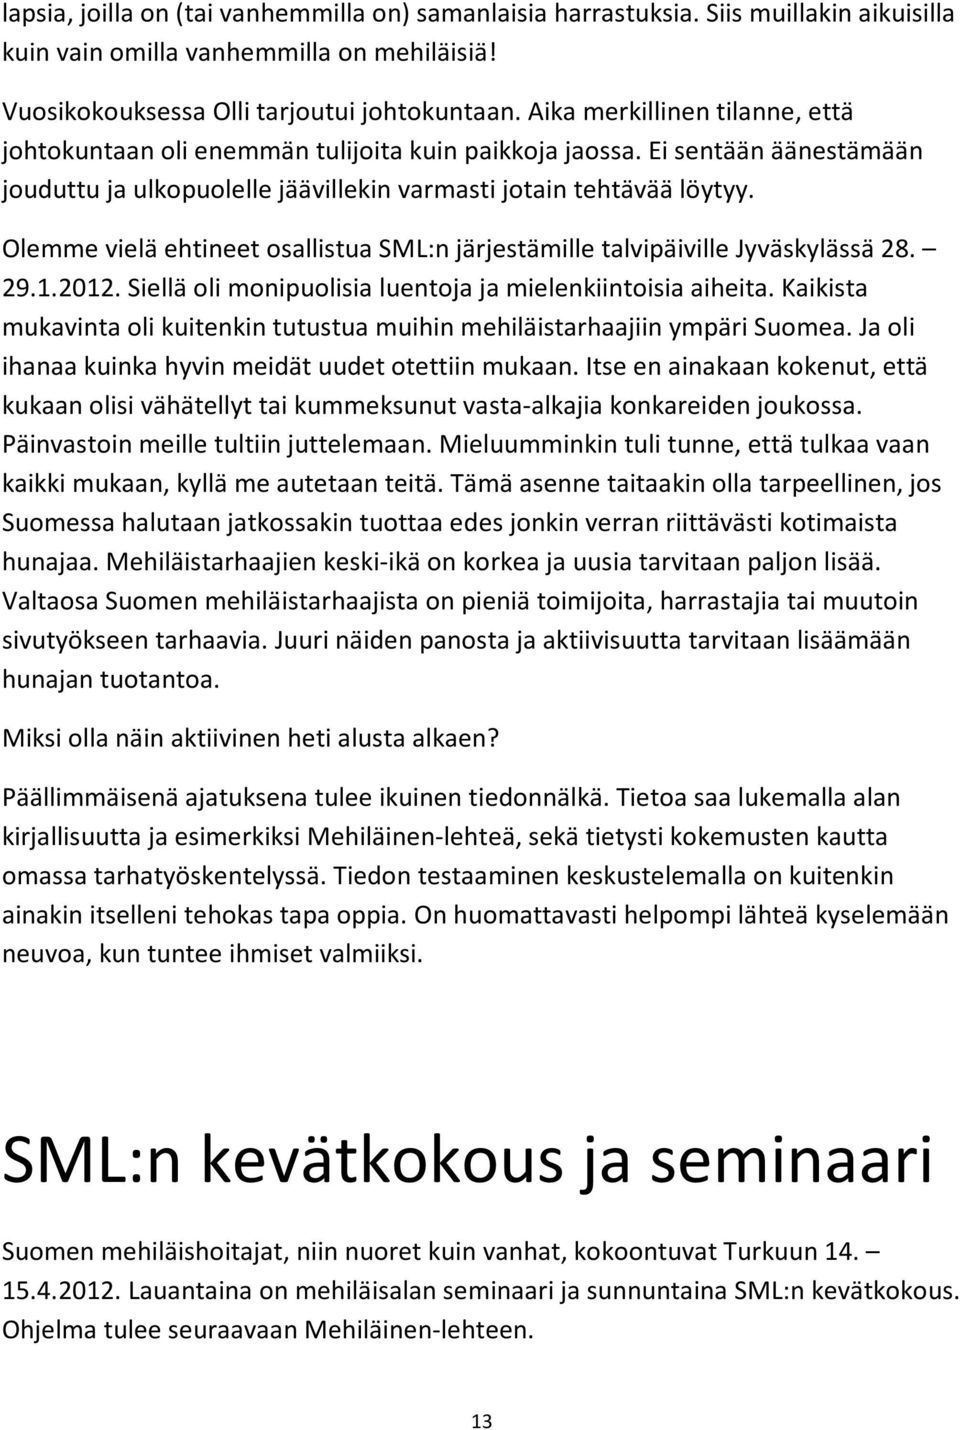 Olemme vielä ehtineet osallistua SML:n järjestämille talvipäiville Jyväskylässä 28. 29.1.2012. Siellä oli monipuolisia luentoja ja mielenkiintoisia aiheita.